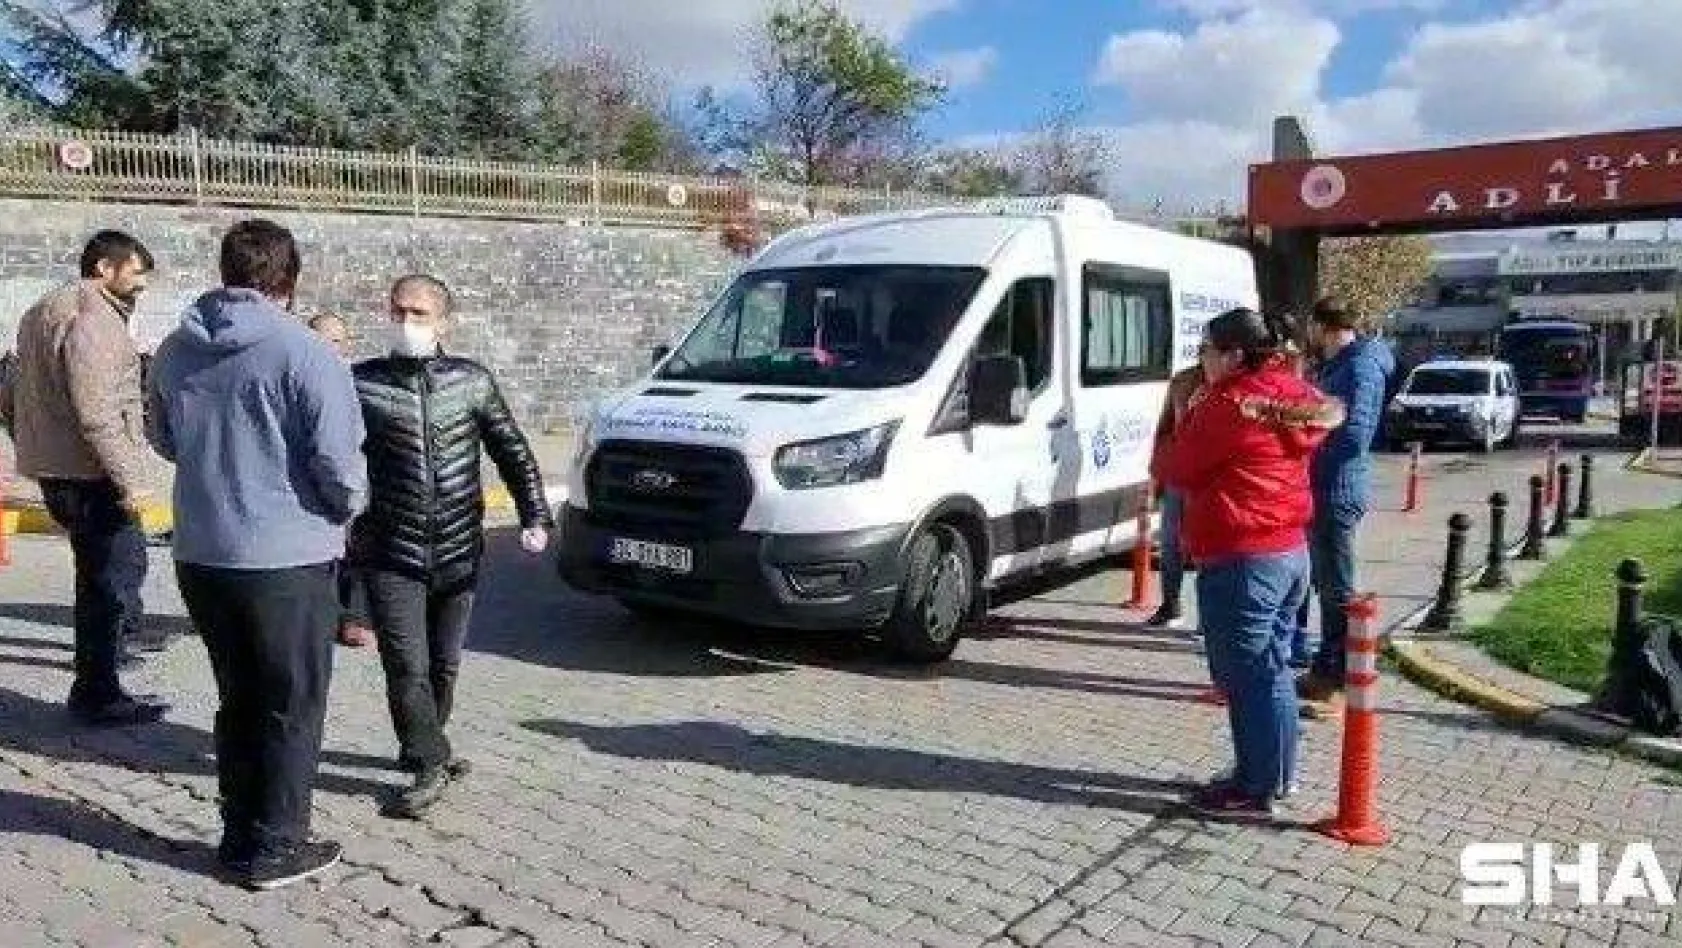 Ataşehir'de samuray kılıcıyla öldürülen kadının cenazesi Adli Tıp Kurumundan alındı